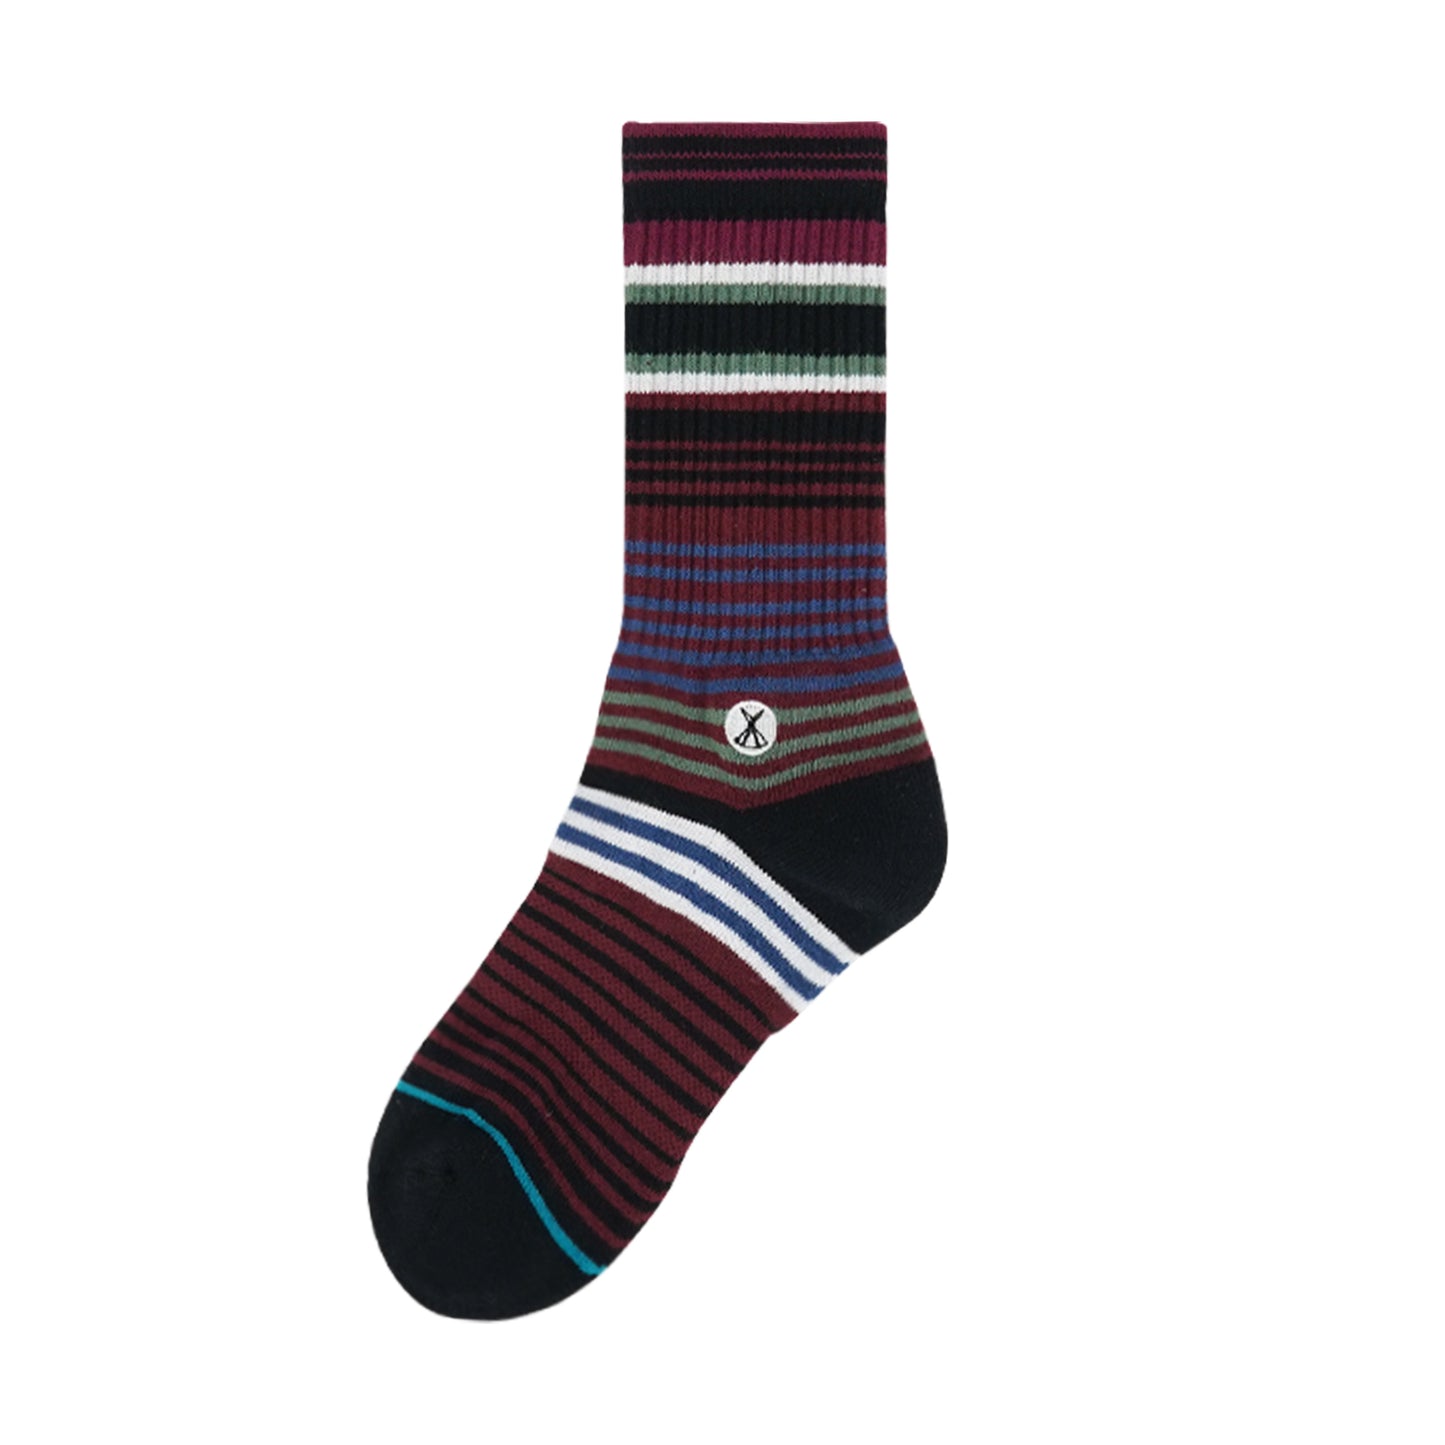 Classic Socks Striped